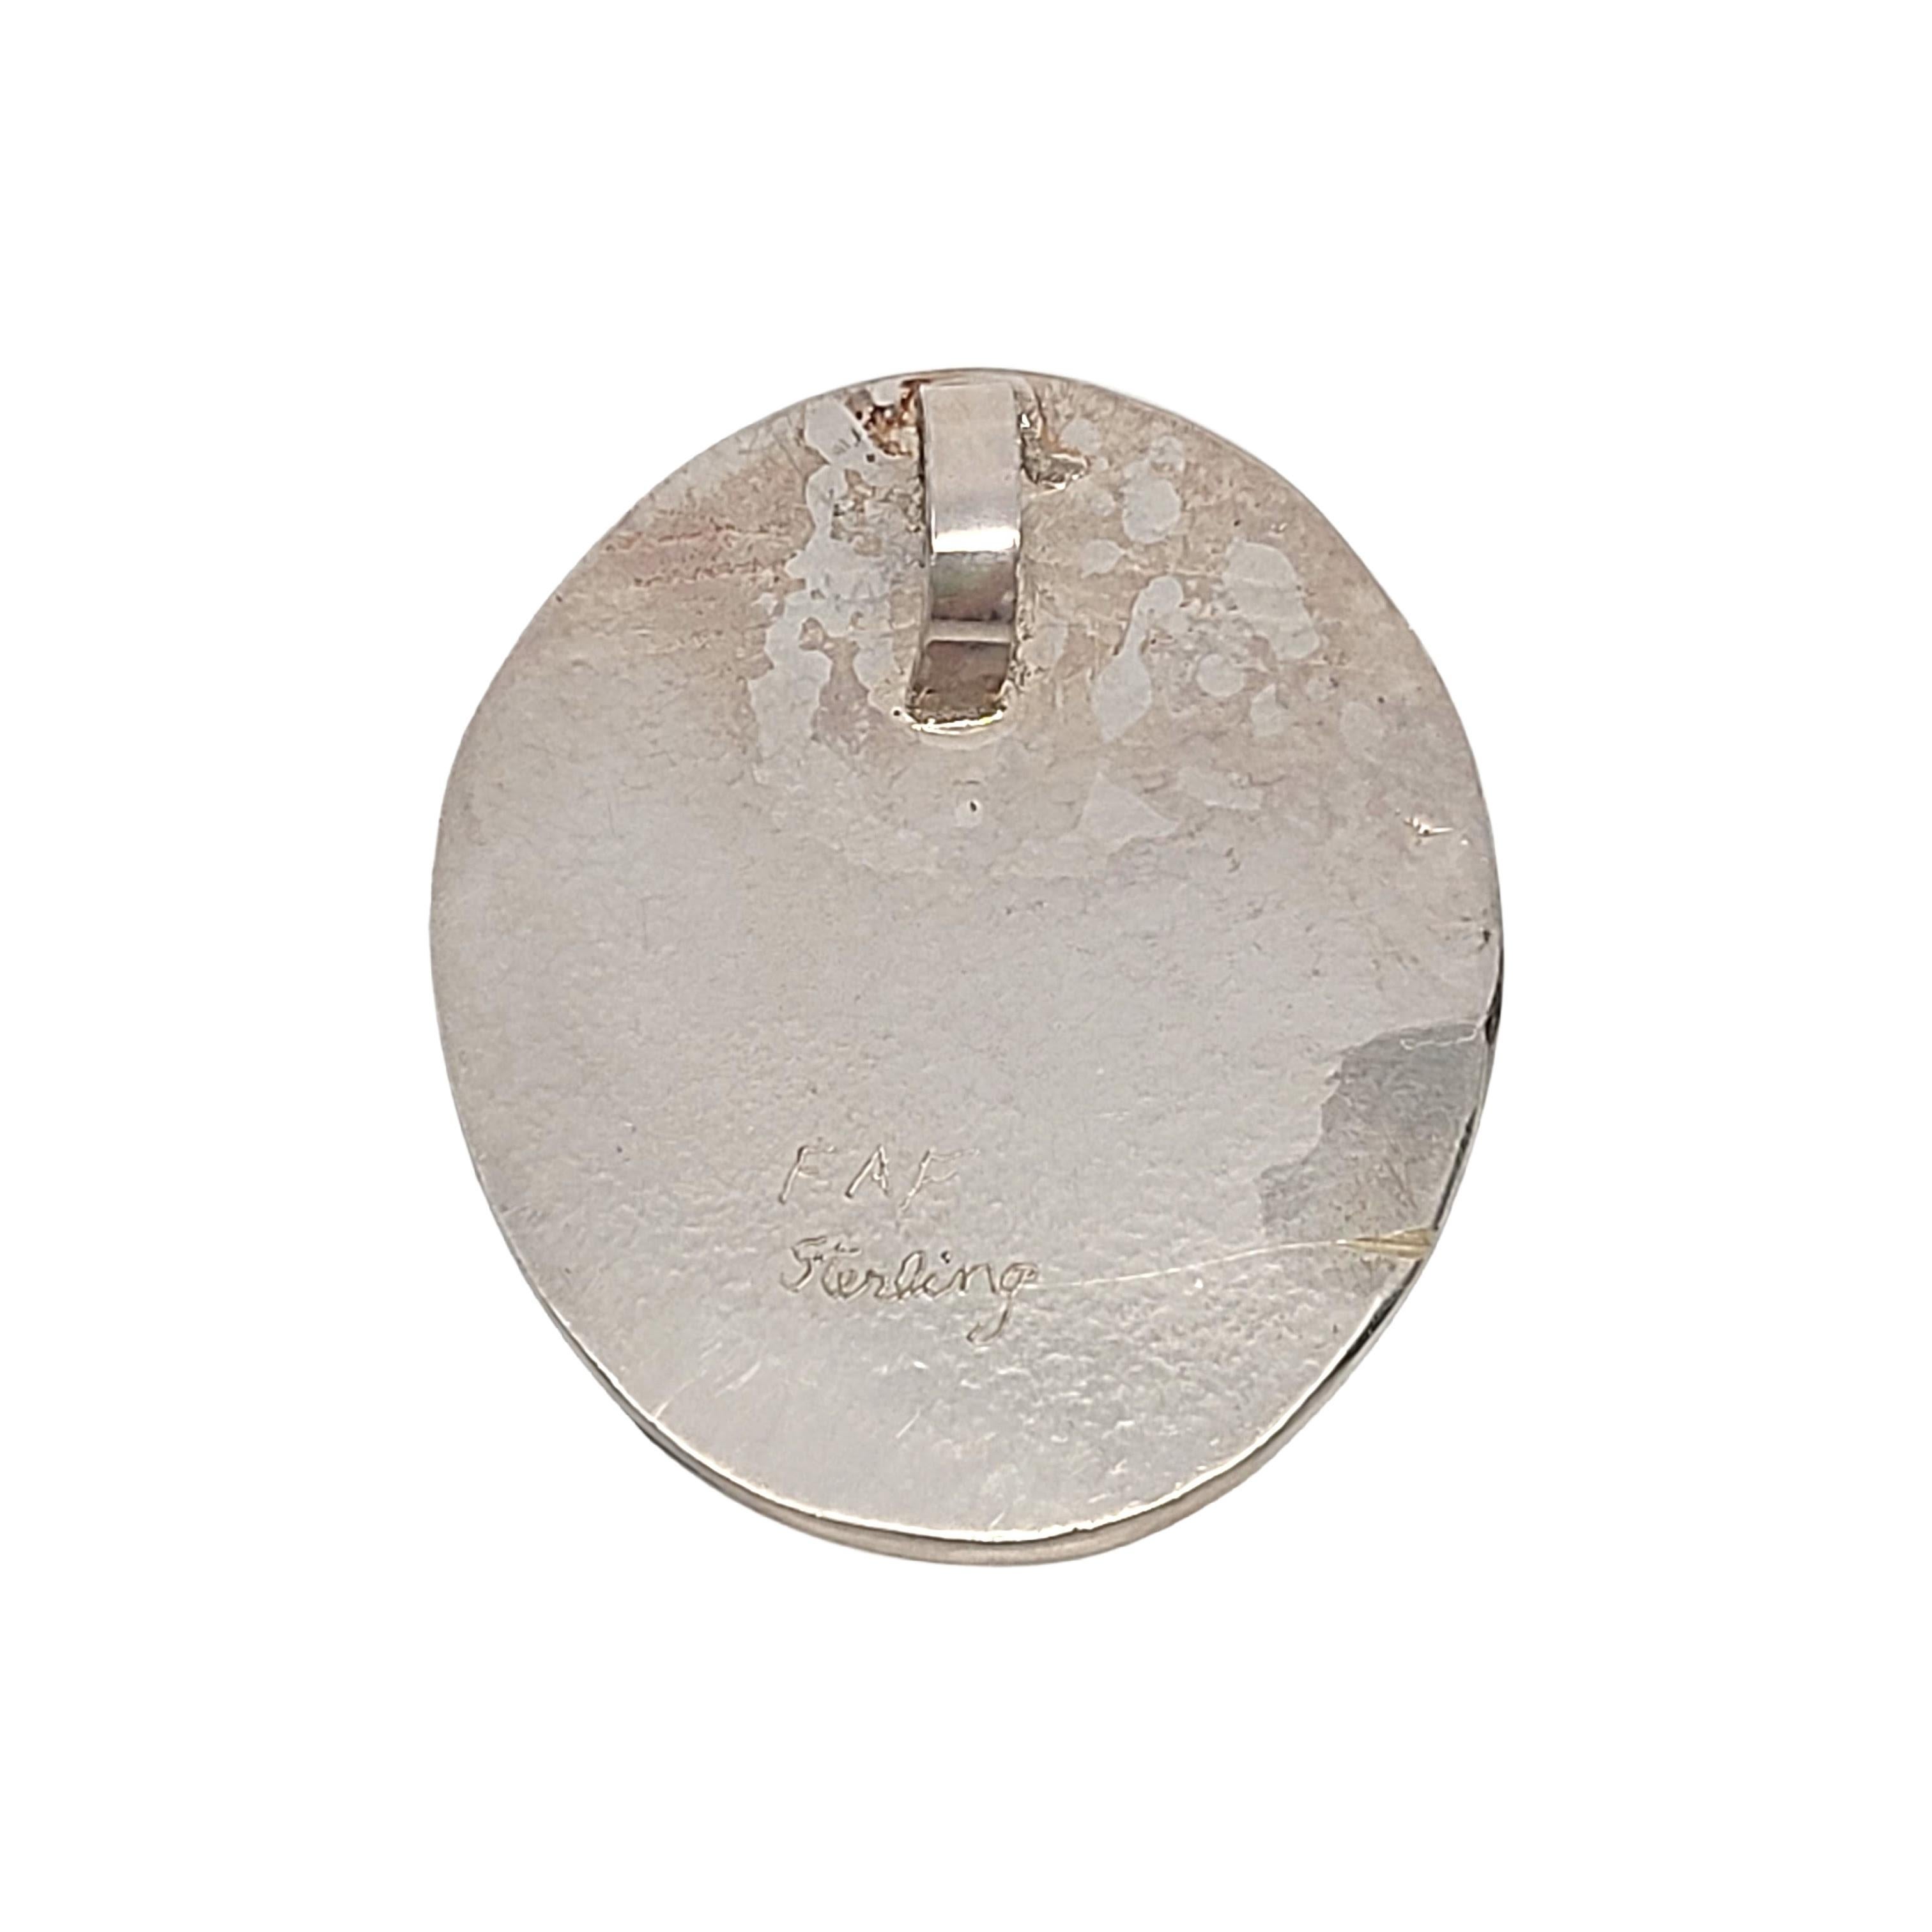 Grand pendentif moderniste en argent sterling et malachite, signé FAF.

Magnifique pierre ovale naturelle en forme de bande de malachite dans une monture moderniste oxydée.

Mesure environ 2